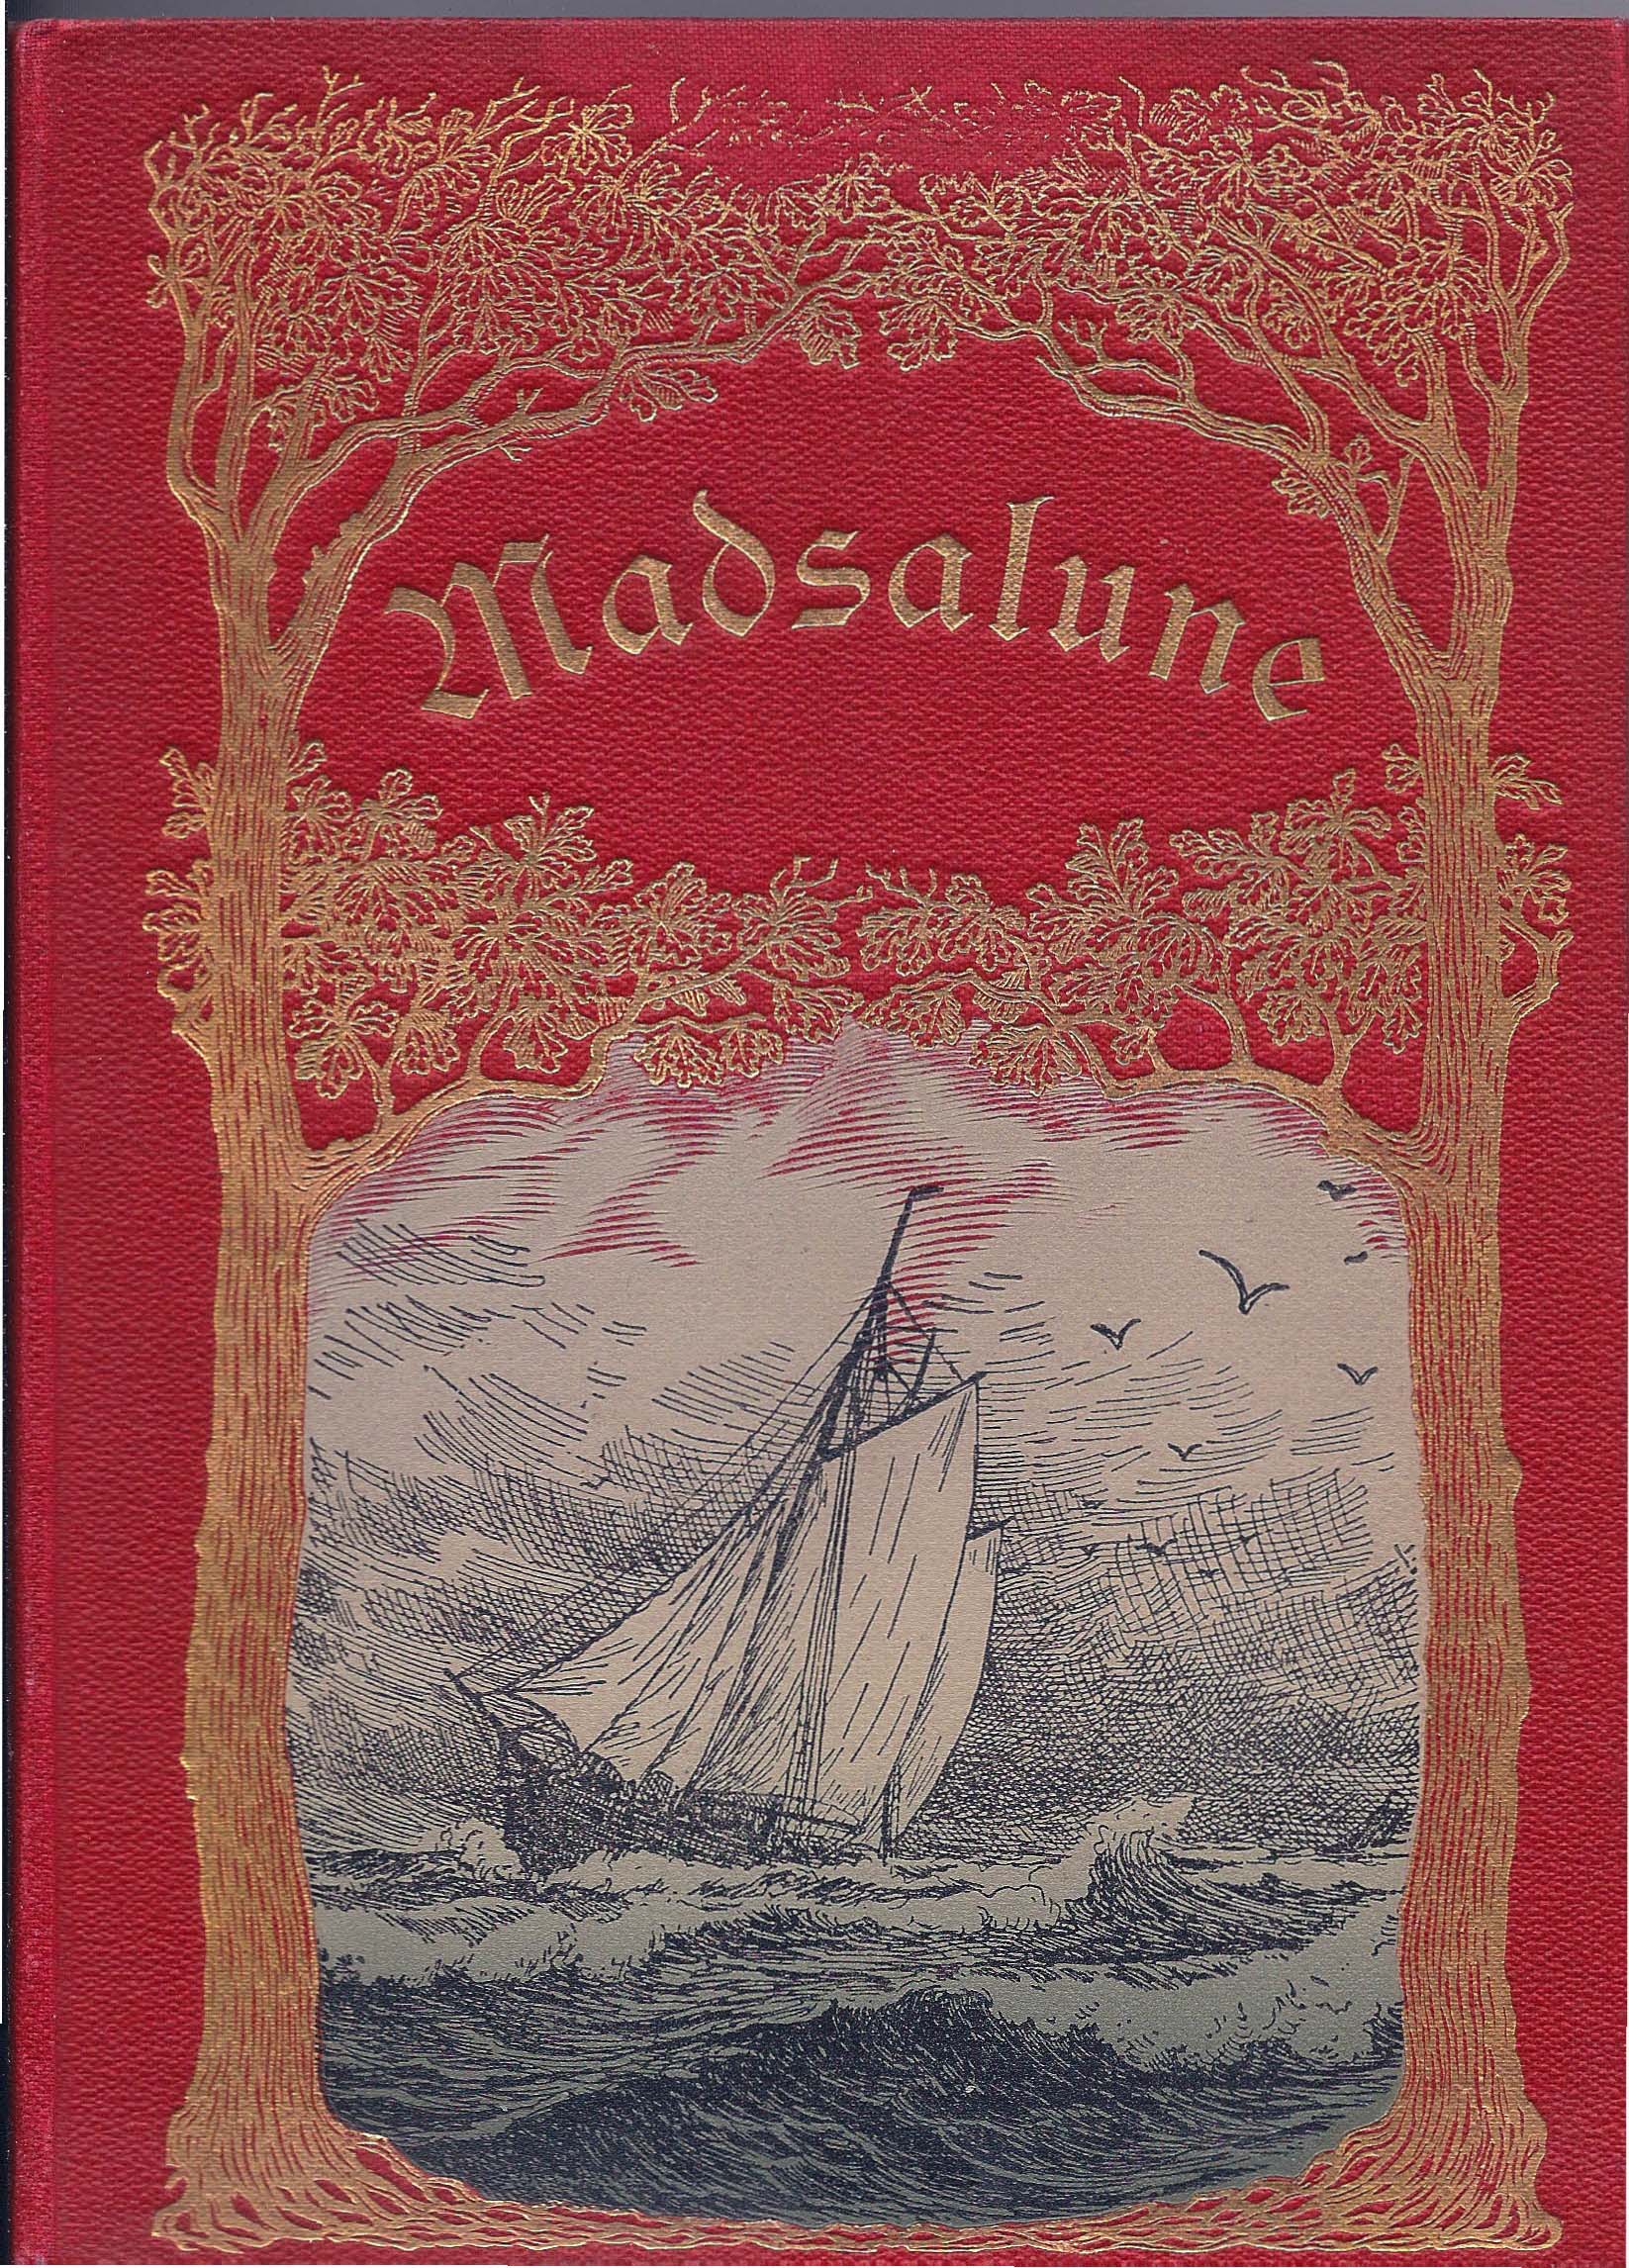 Madsalune - Carit Etlar